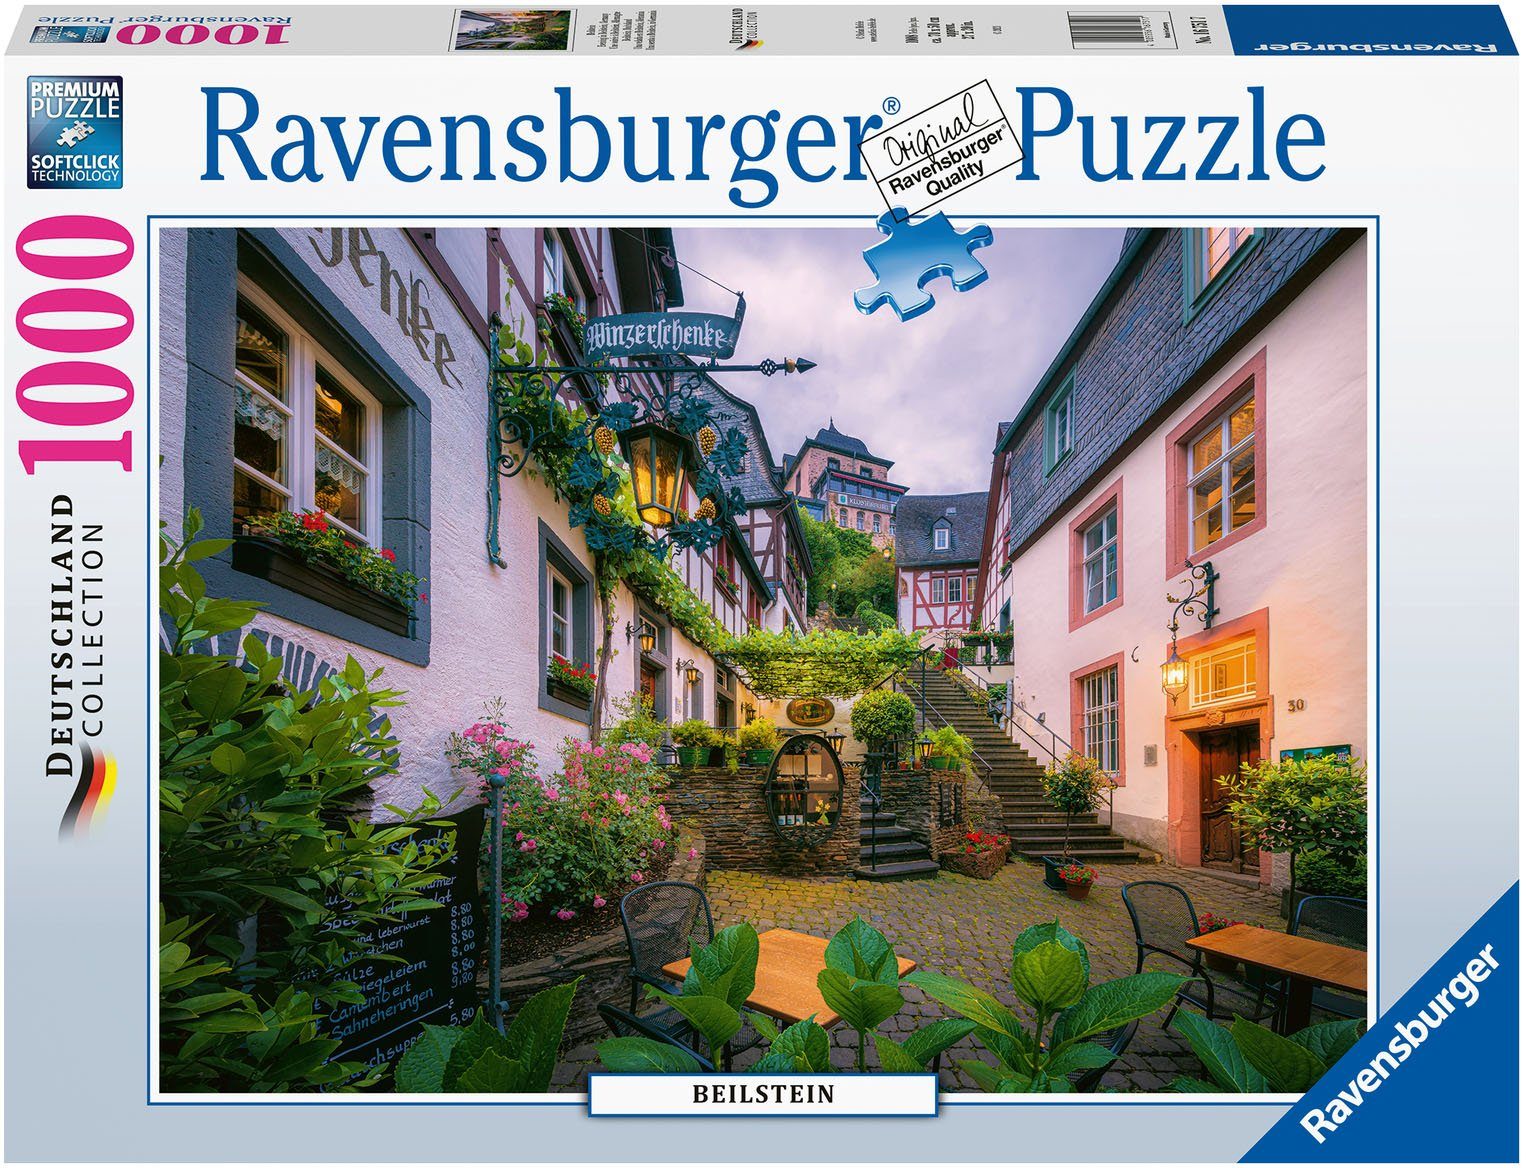 Ravensburger Puzzle Beilstein, 1000 Puzzleteile, FSC® - schützt Wald - weltweit; Made in Germany